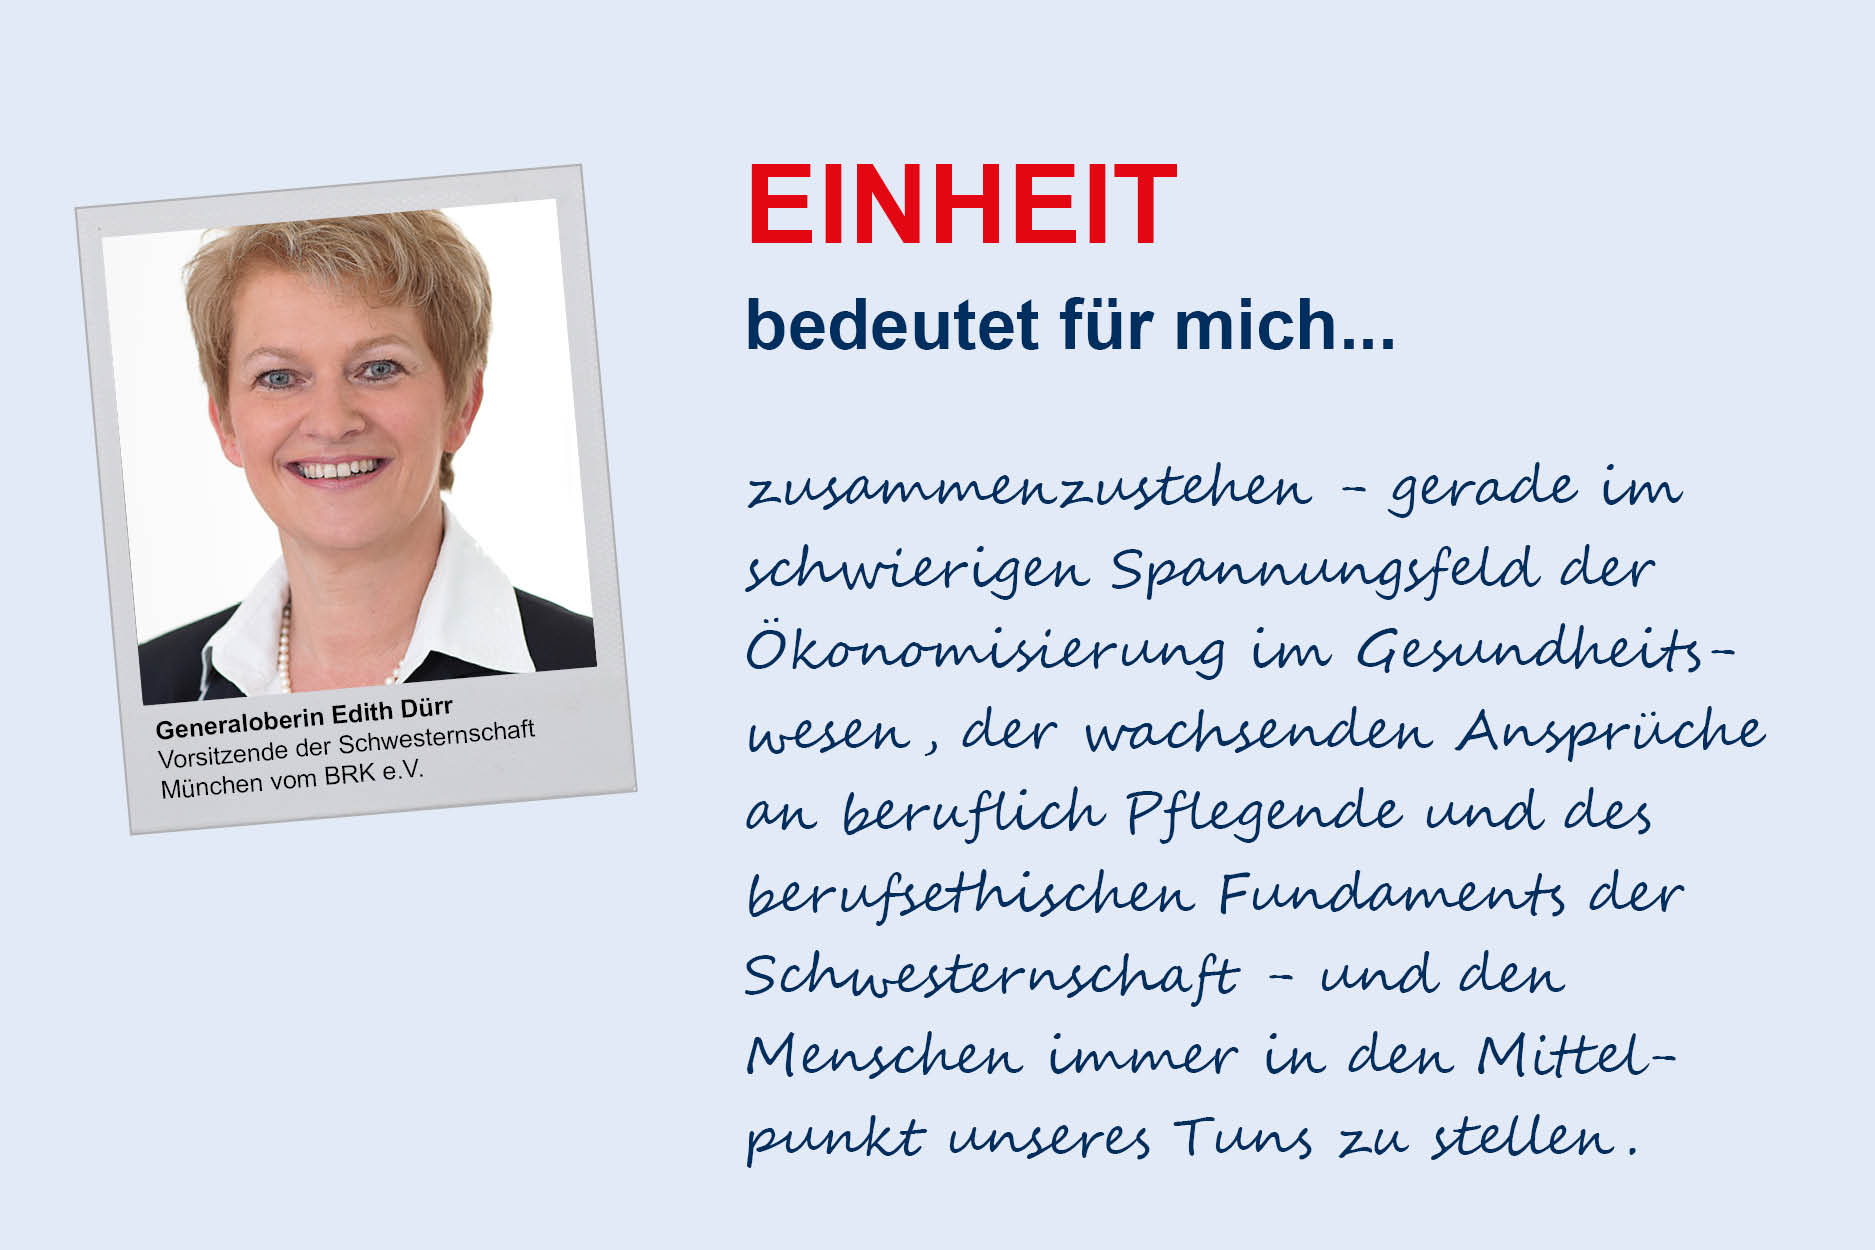 Generaloberin Edith Dürr, Schwesternschaft München vom BRK e.V.
**Einheit**